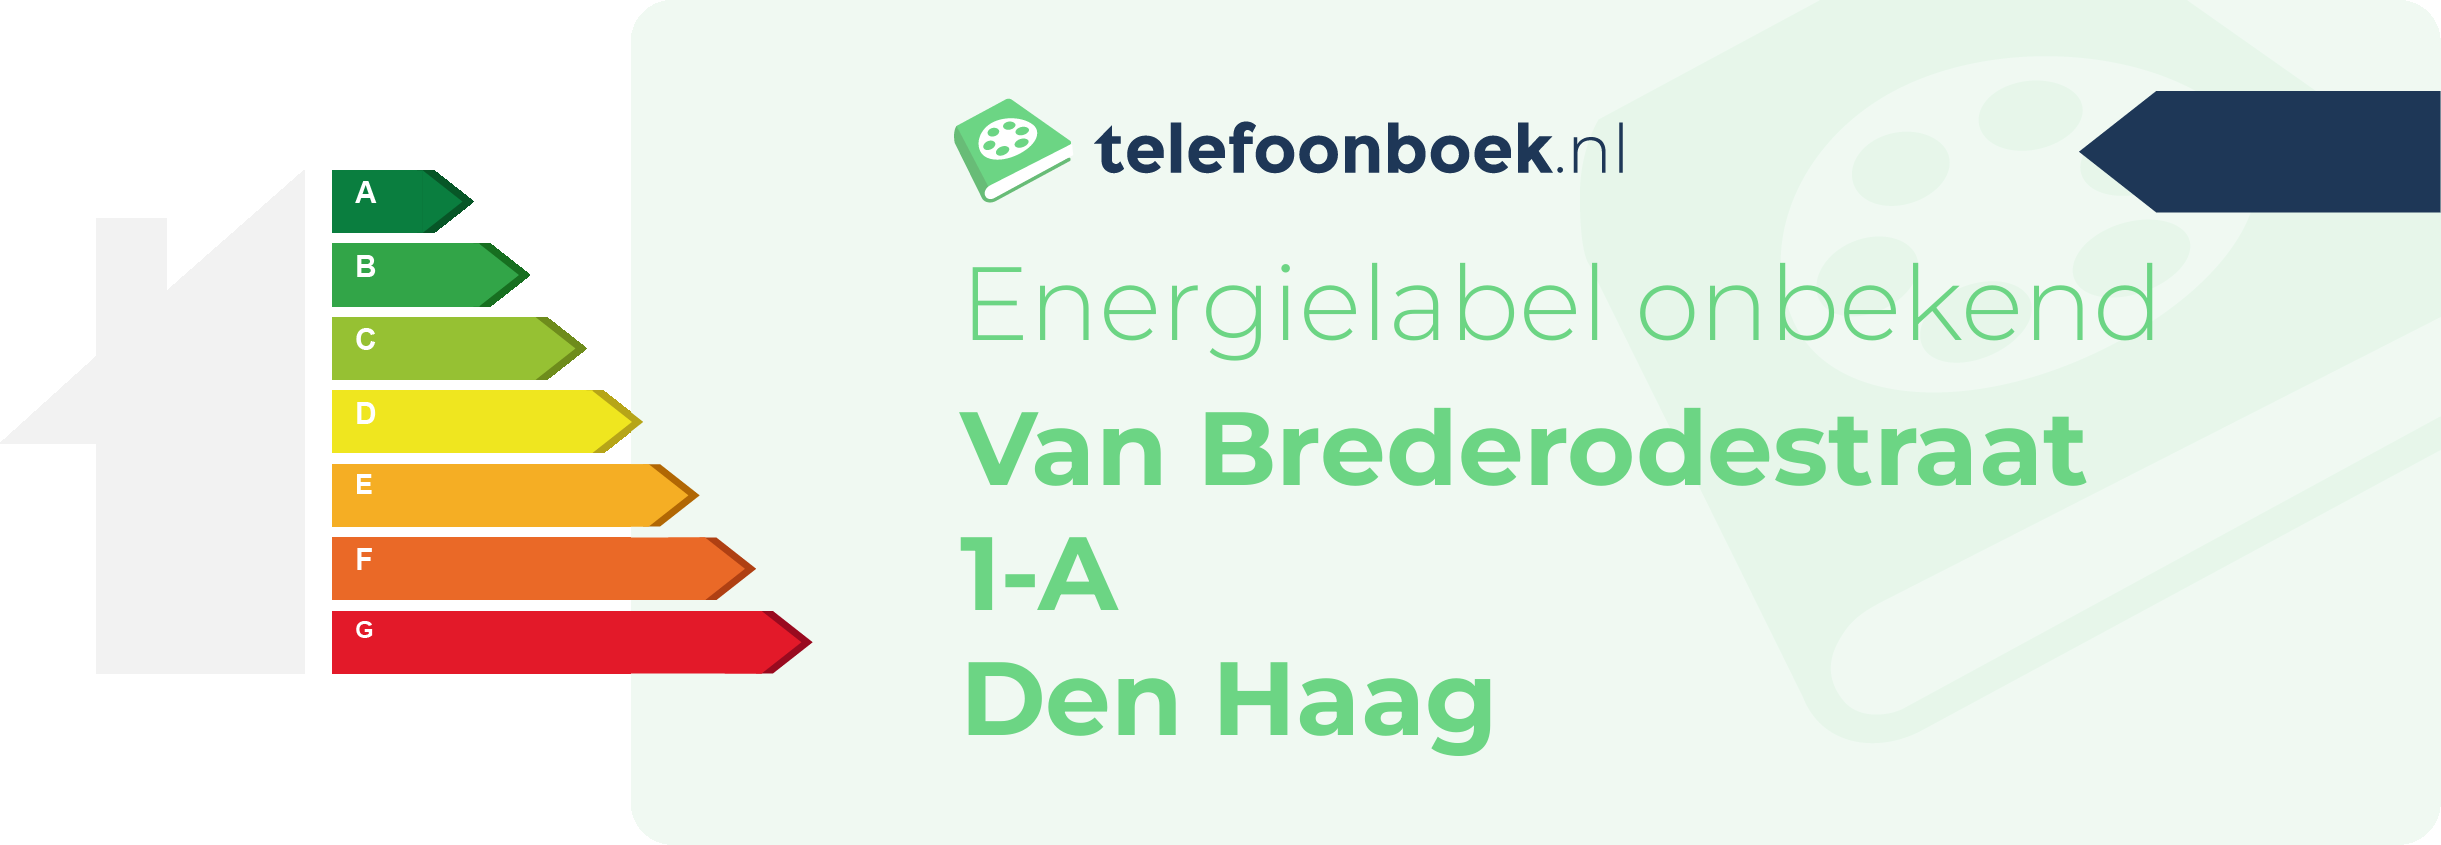 Energielabel Van Brederodestraat 1-A Den Haag